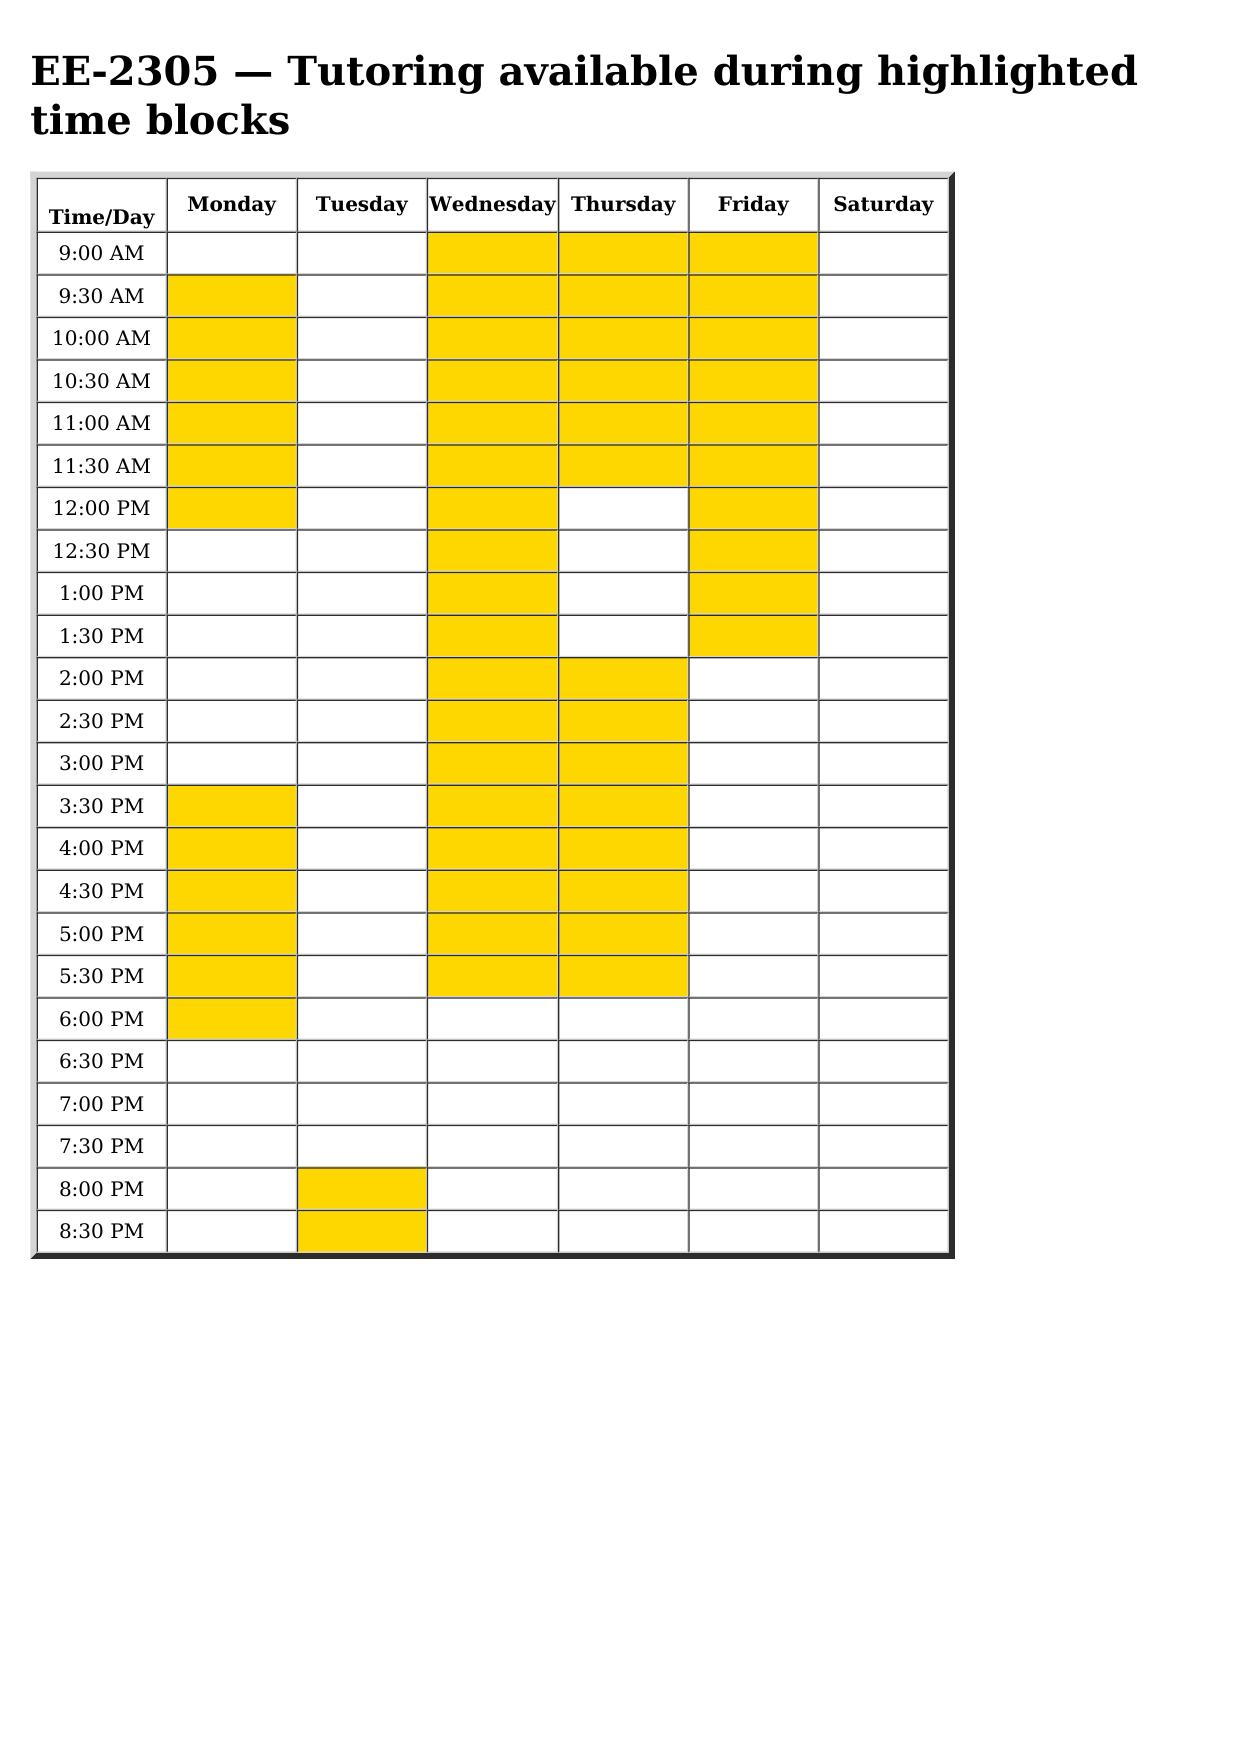 ee 2305 schedule